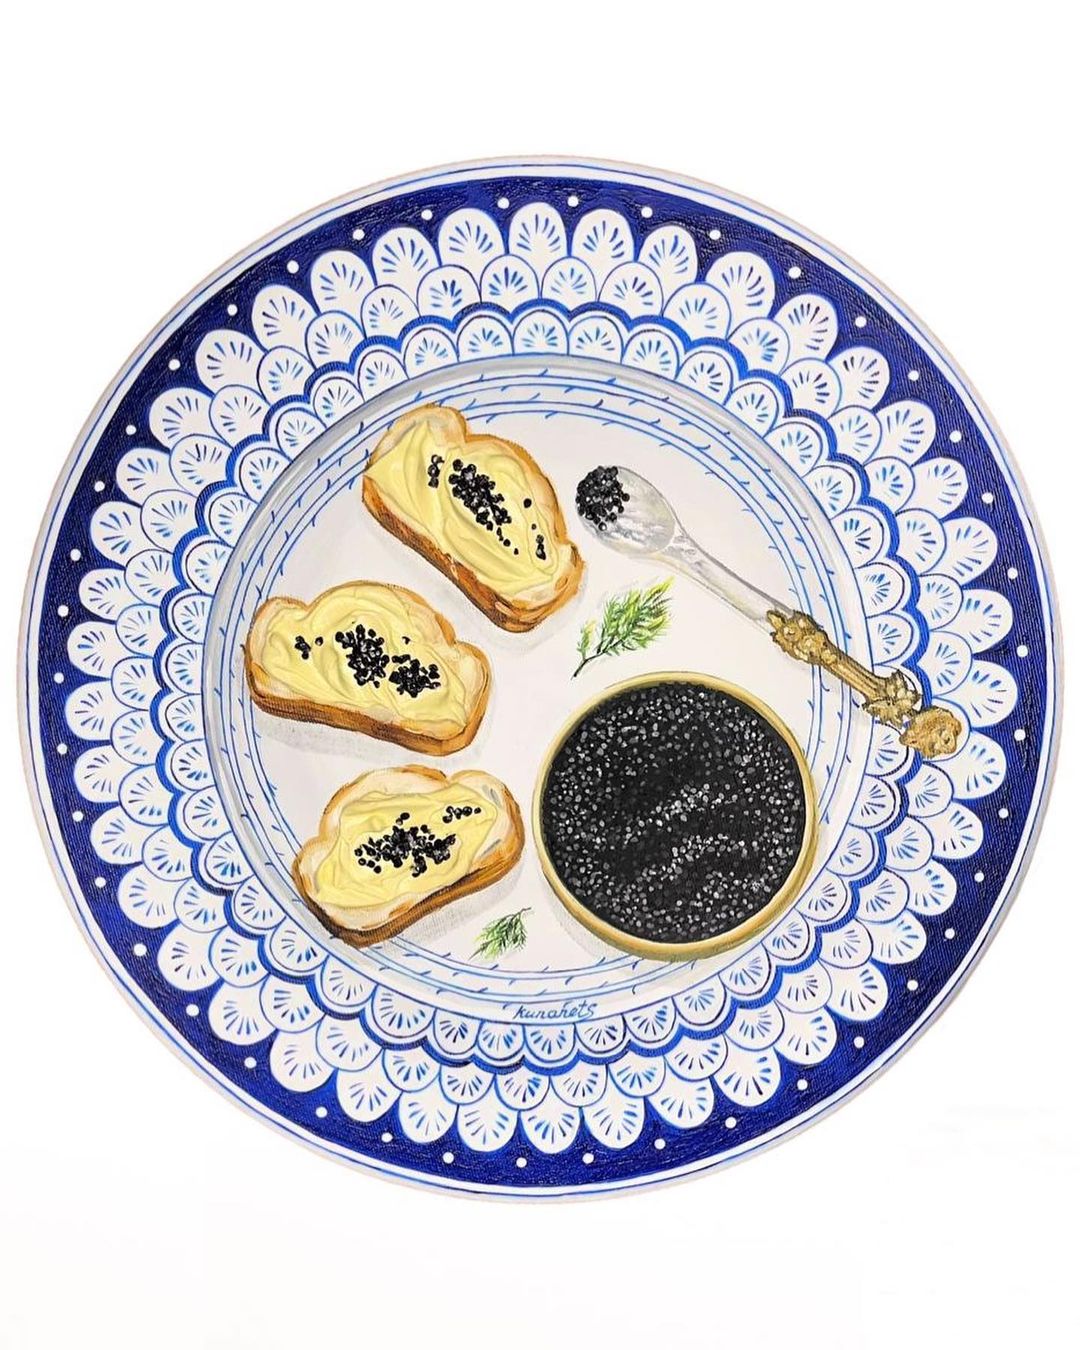 Картины с едой на винтажных тарелках от Кристины Кунанец